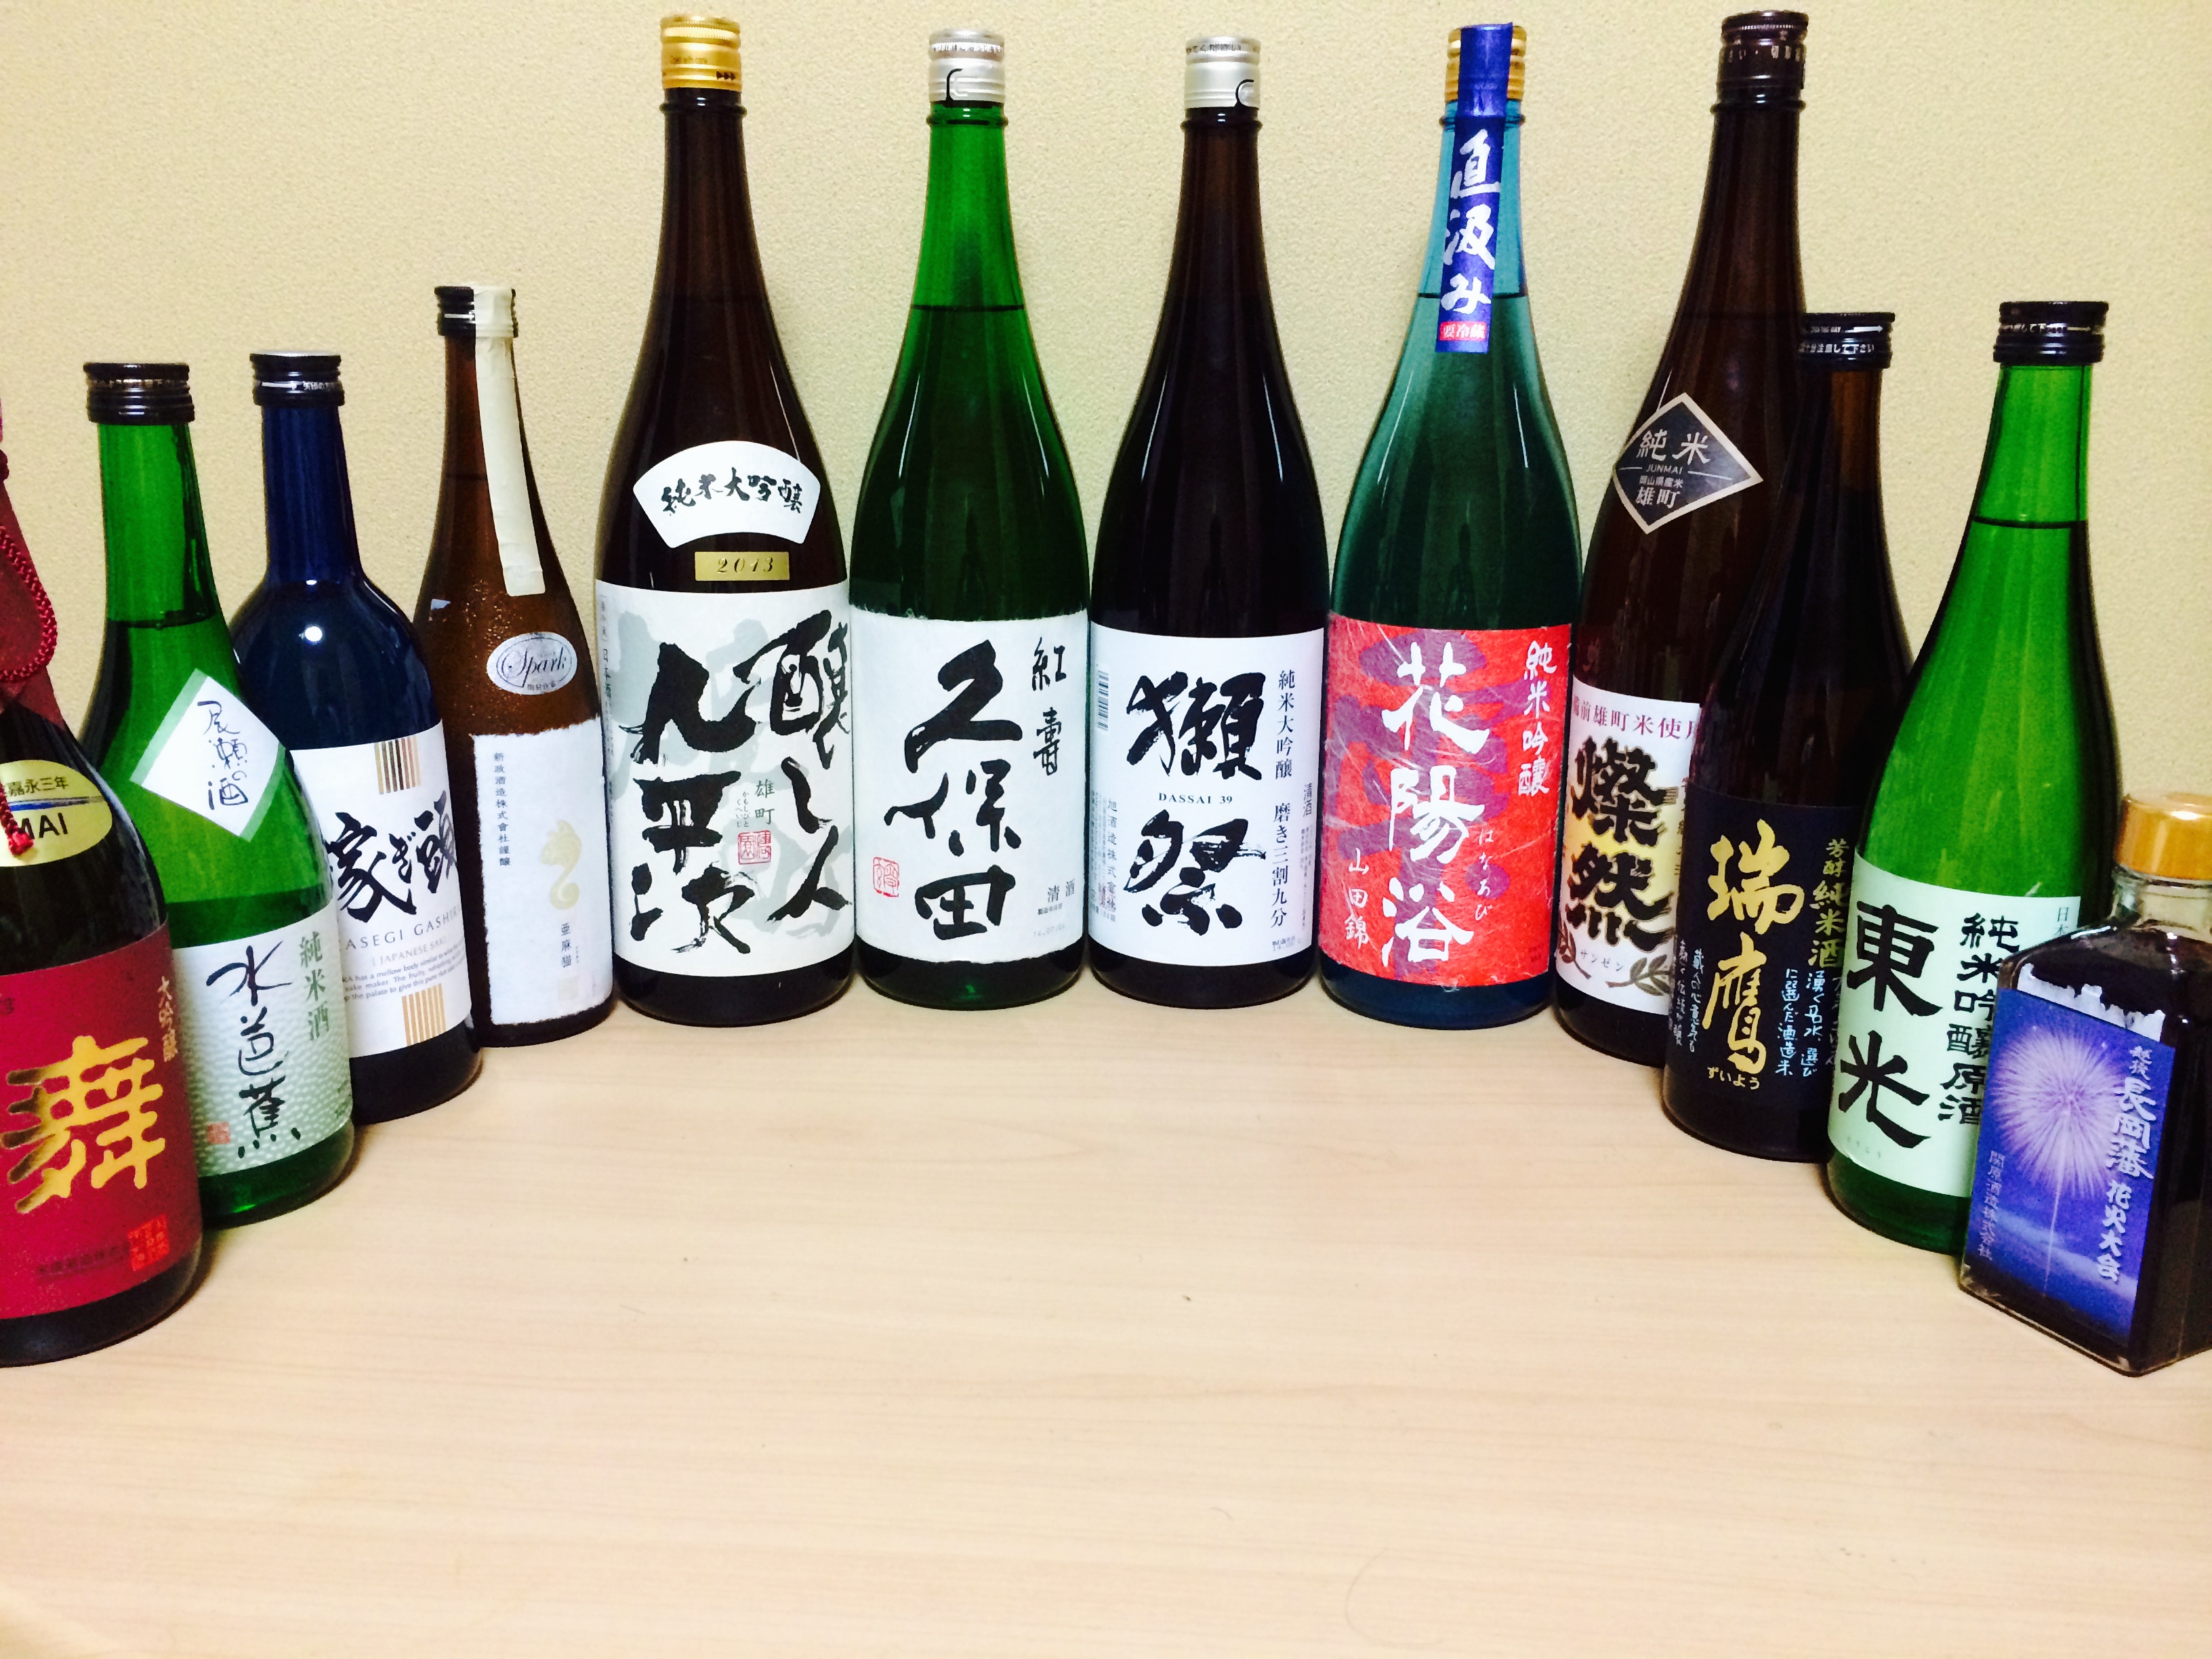 国際交流イベント - Japanese Sake & Craft Beer Party